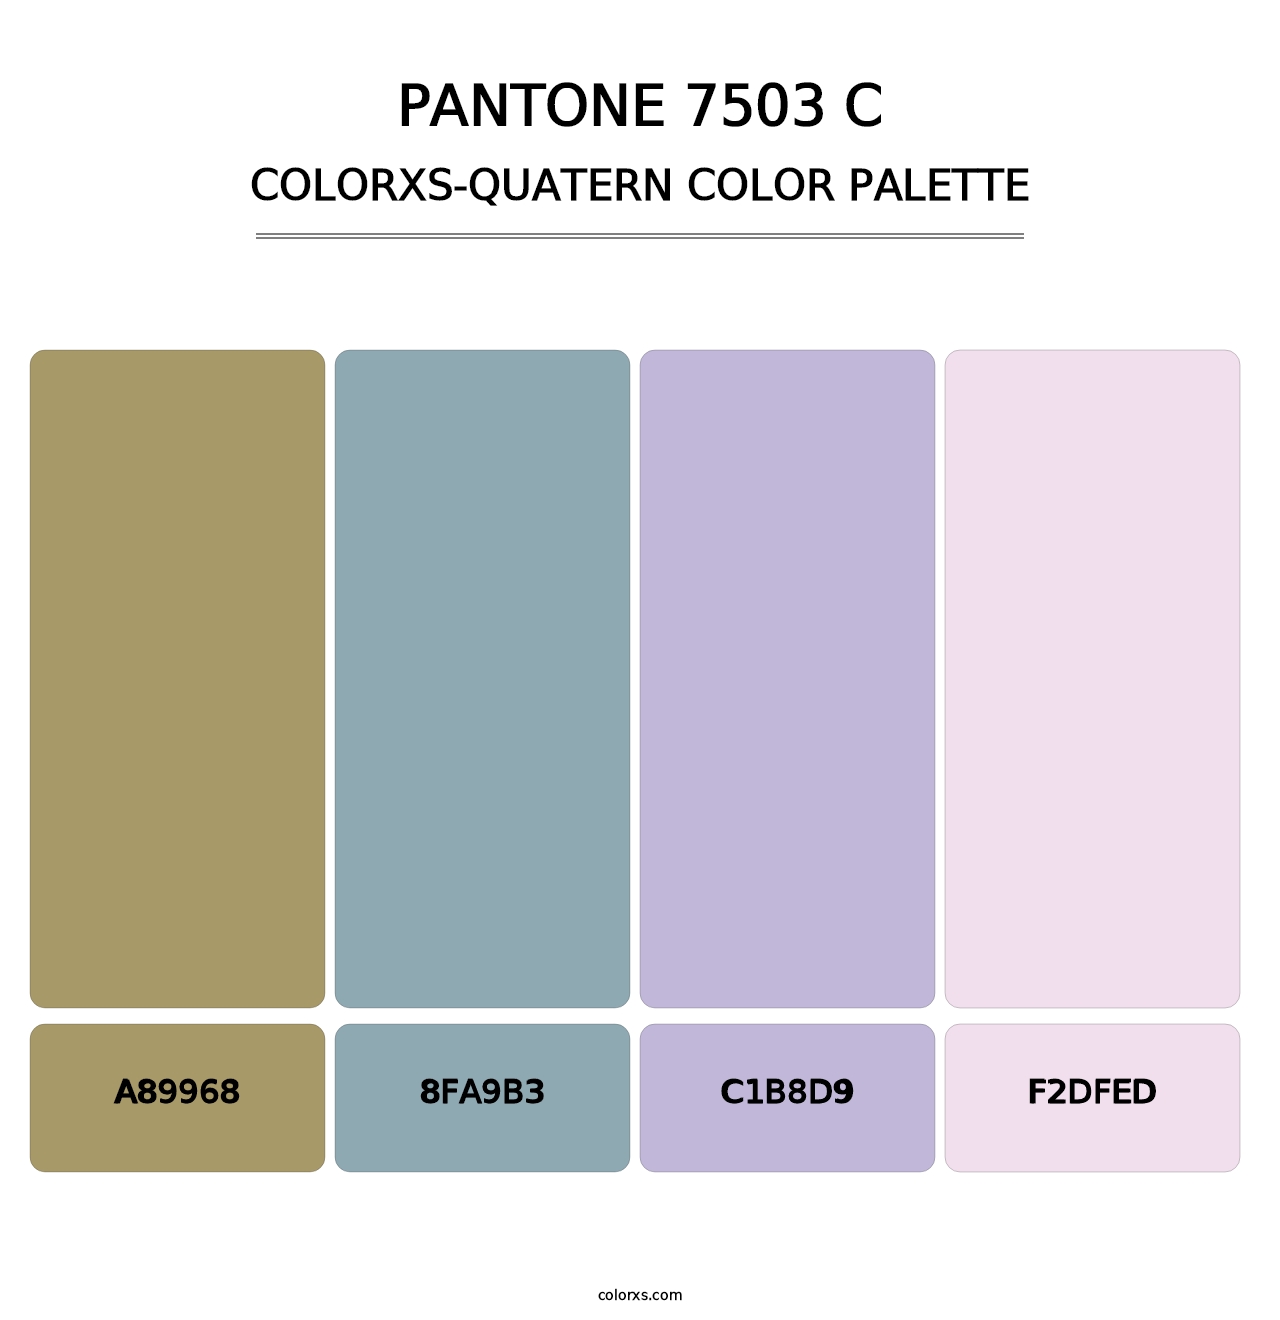 PANTONE 7503 C - Colorxs Quatern Palette